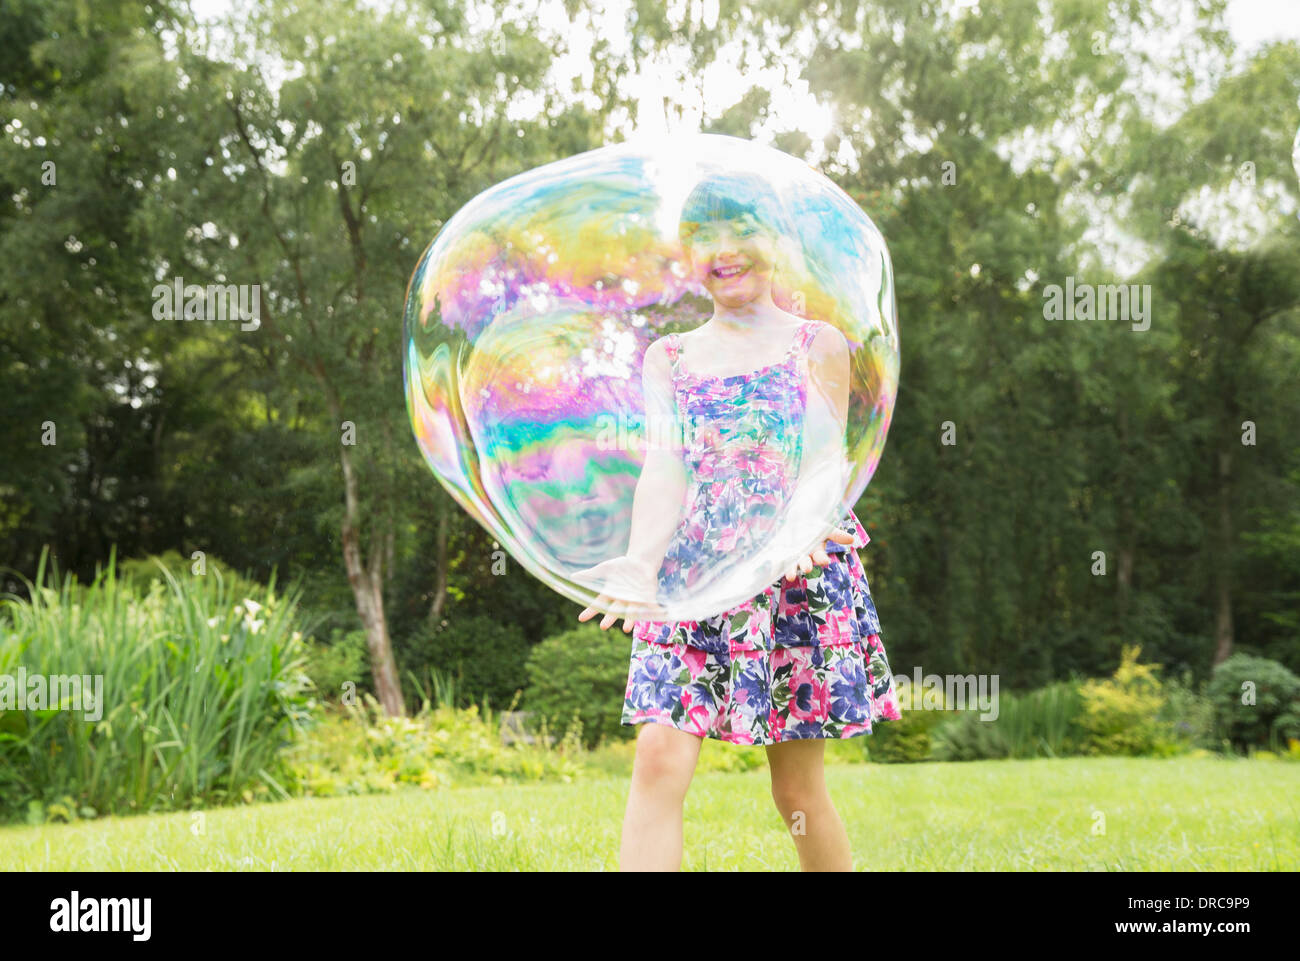 Père et fille jouer avec des grosses bulles dans la cour Banque D'Images